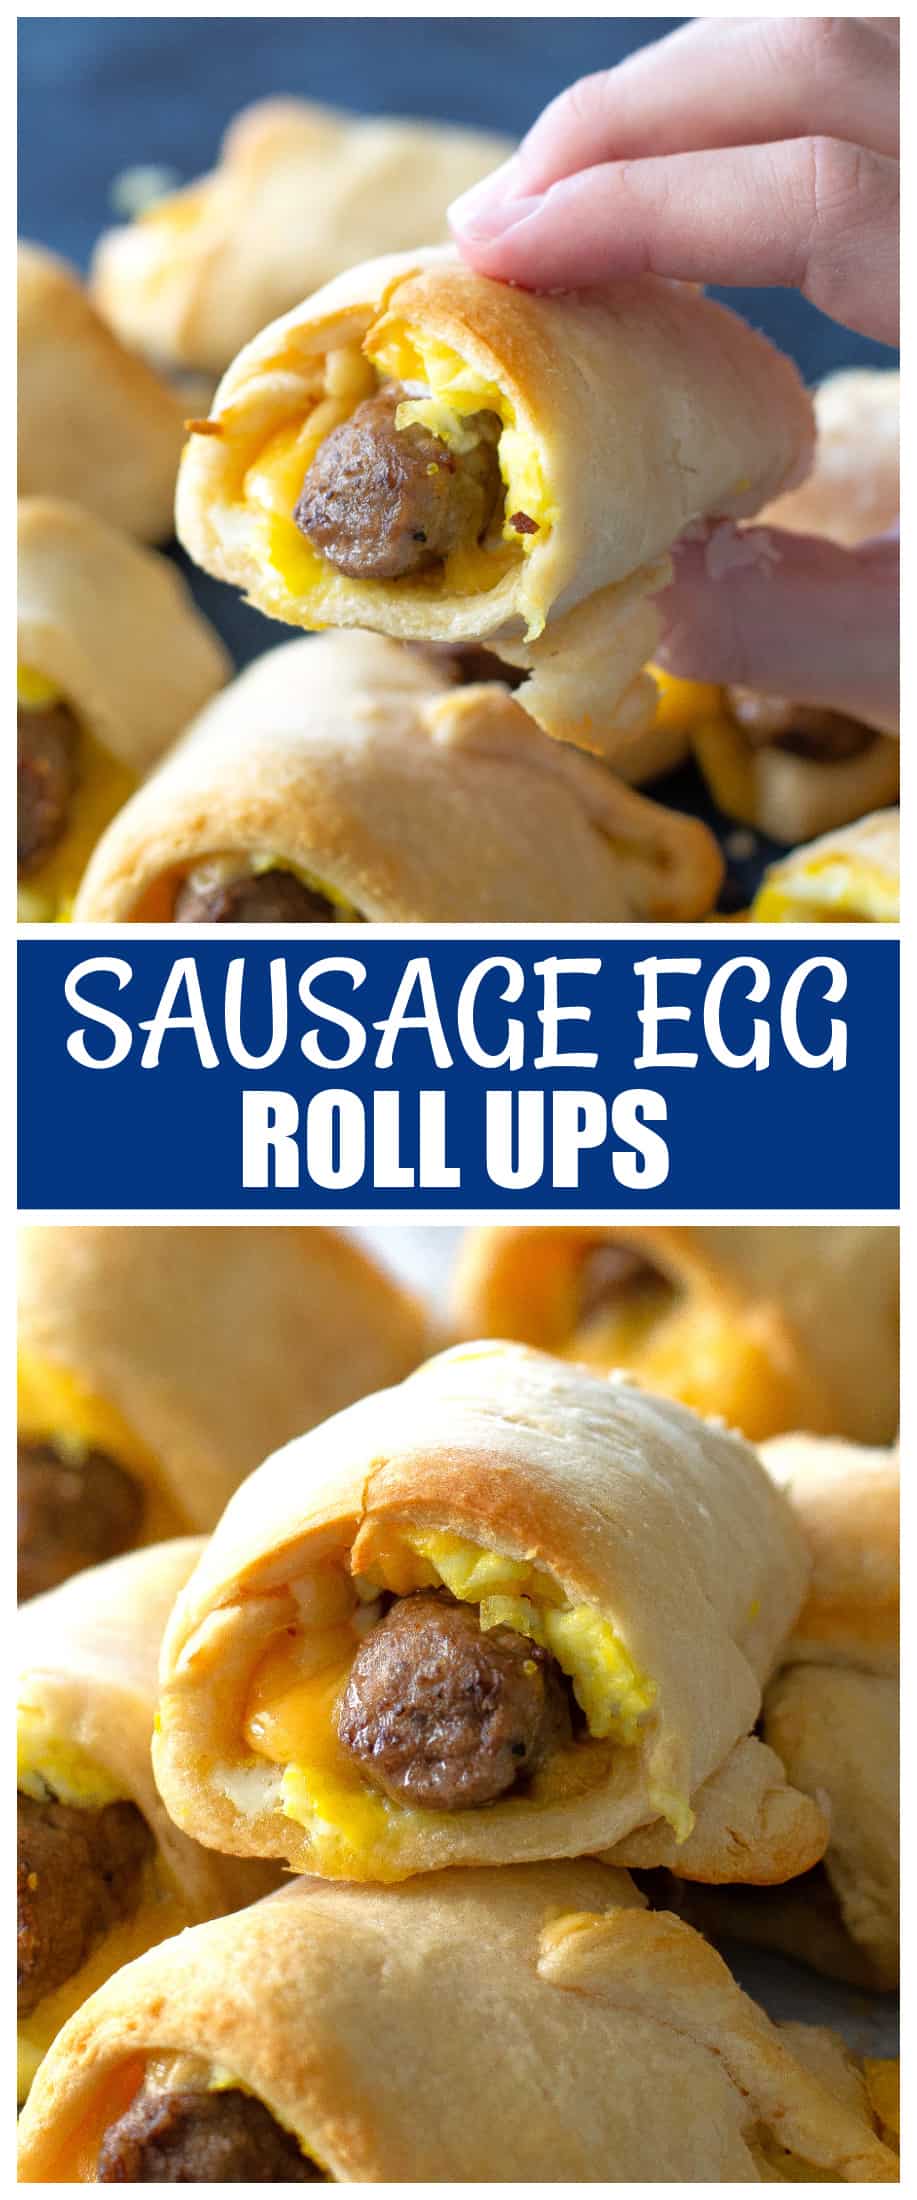 sausage egg roll ups